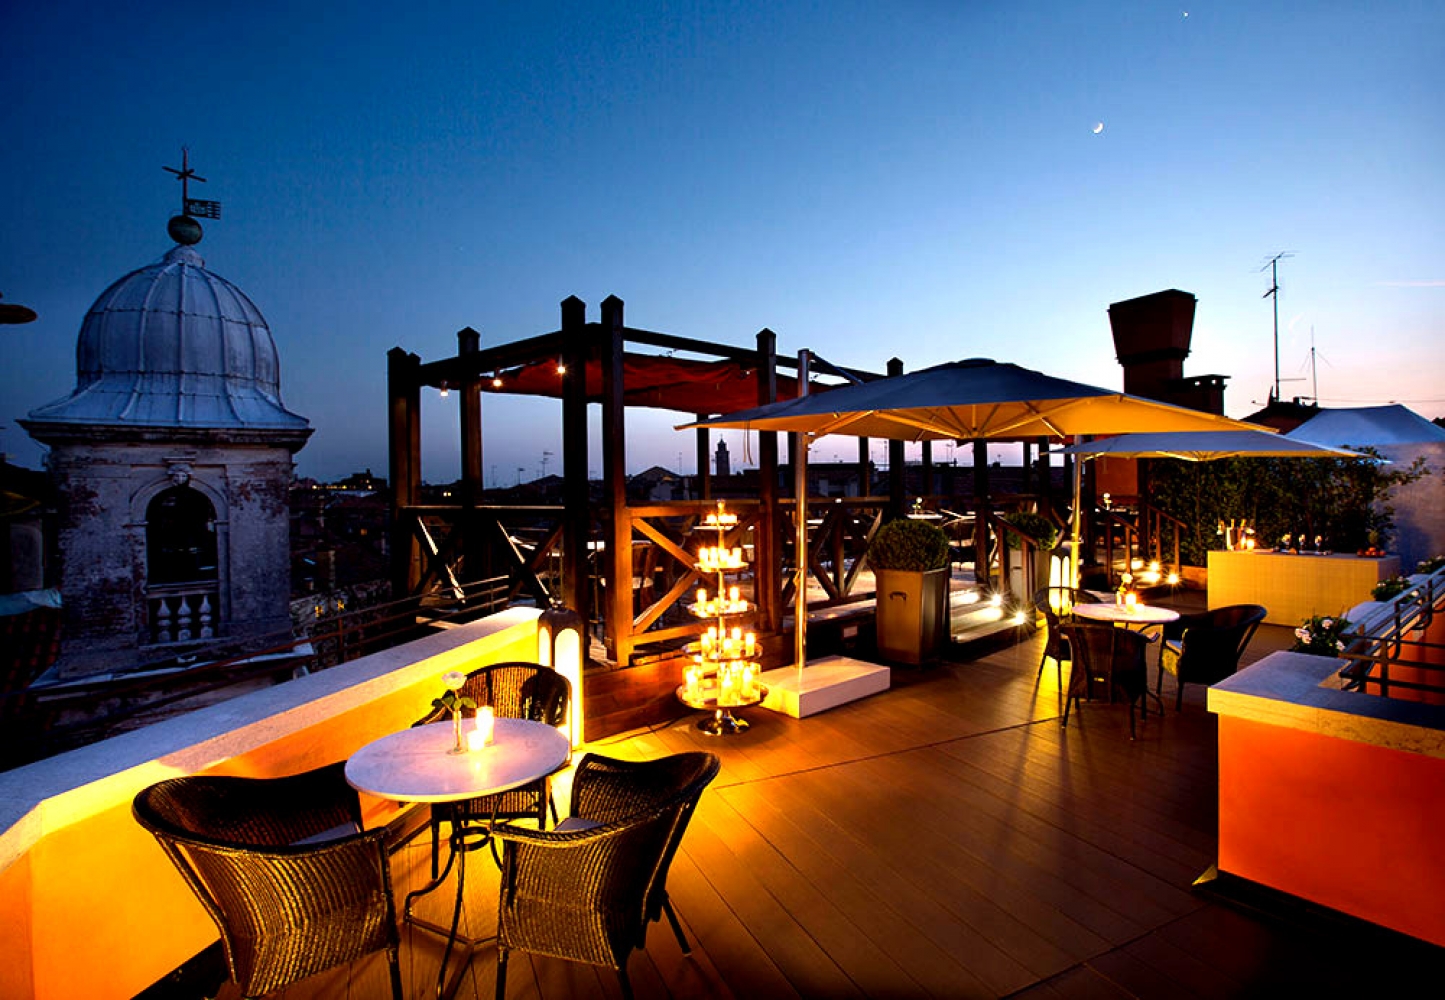 View of Altana Starhotels Splendid at night